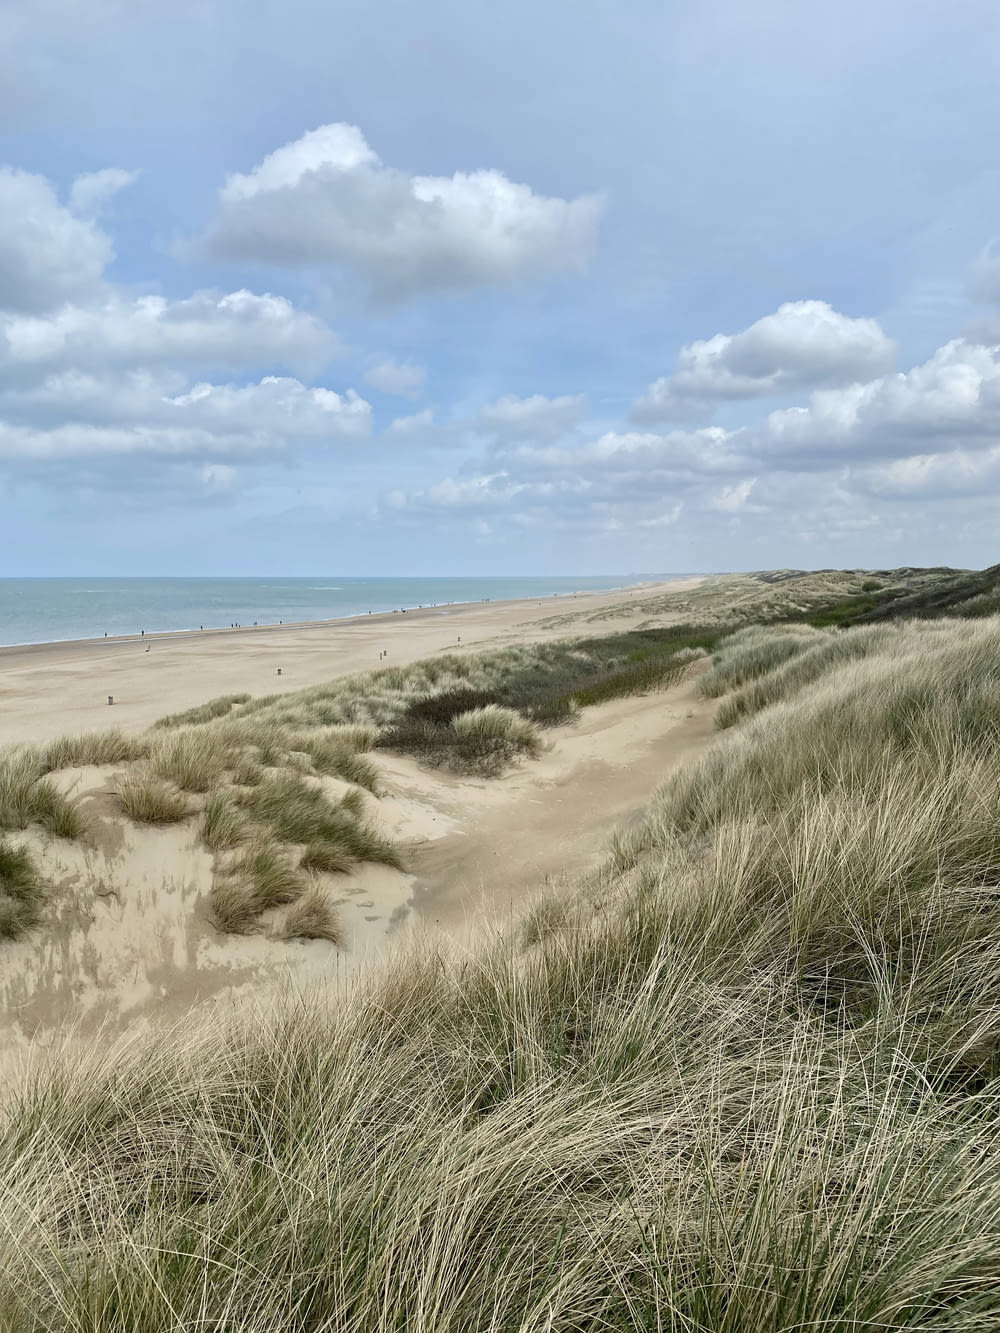 a sandy beach with tall grass and a blue sky